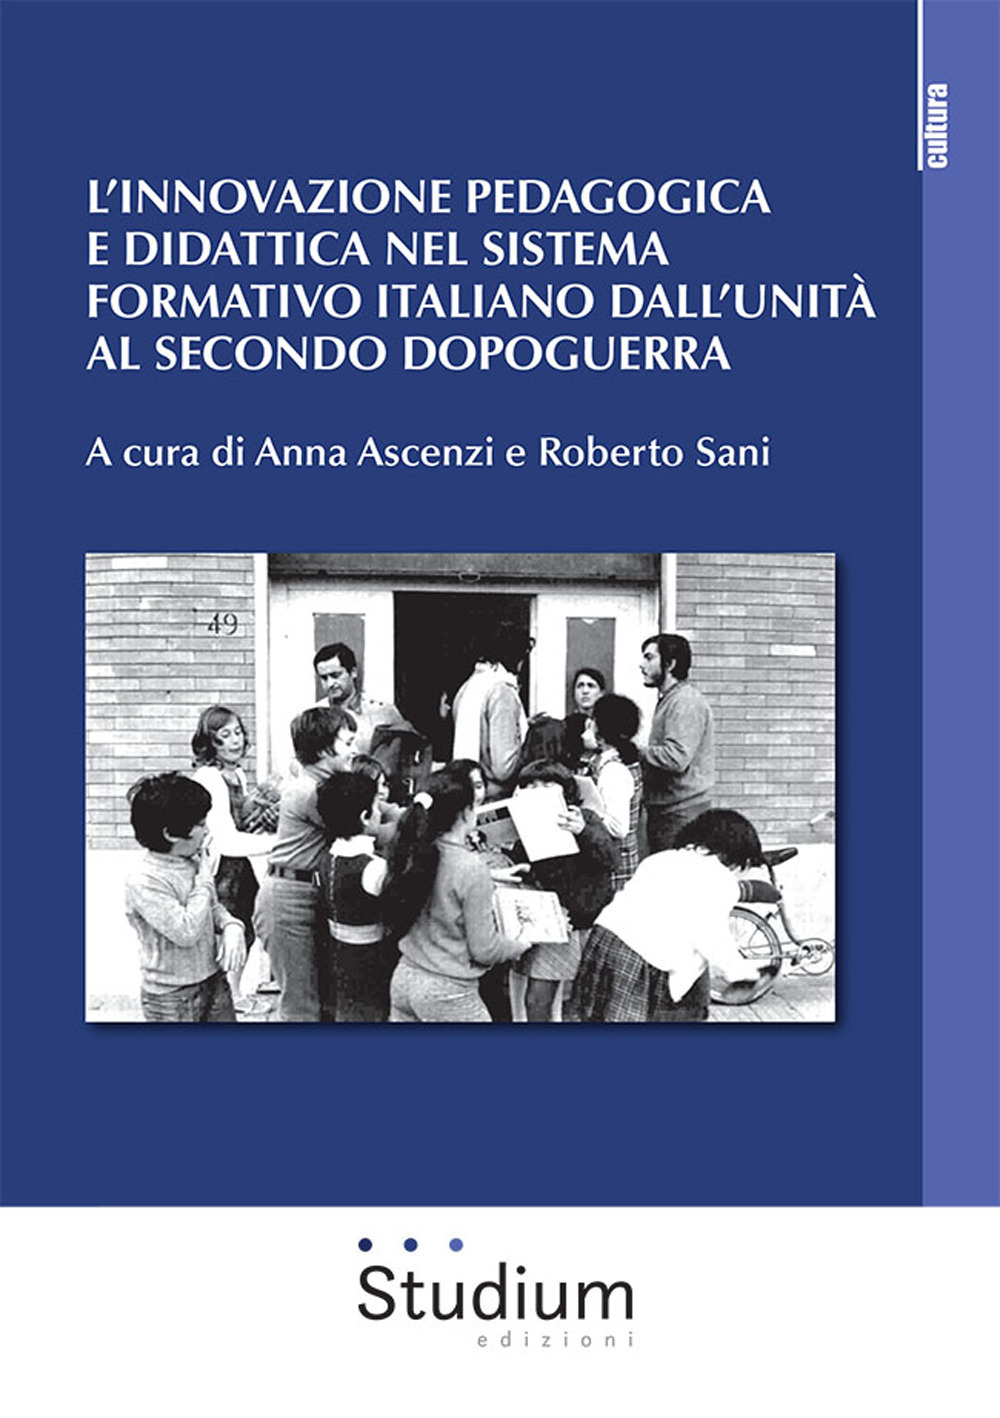 L'innovazione pedagogica e didattica nel sistema formativo italiano dall'unità al secondo dopoguerra